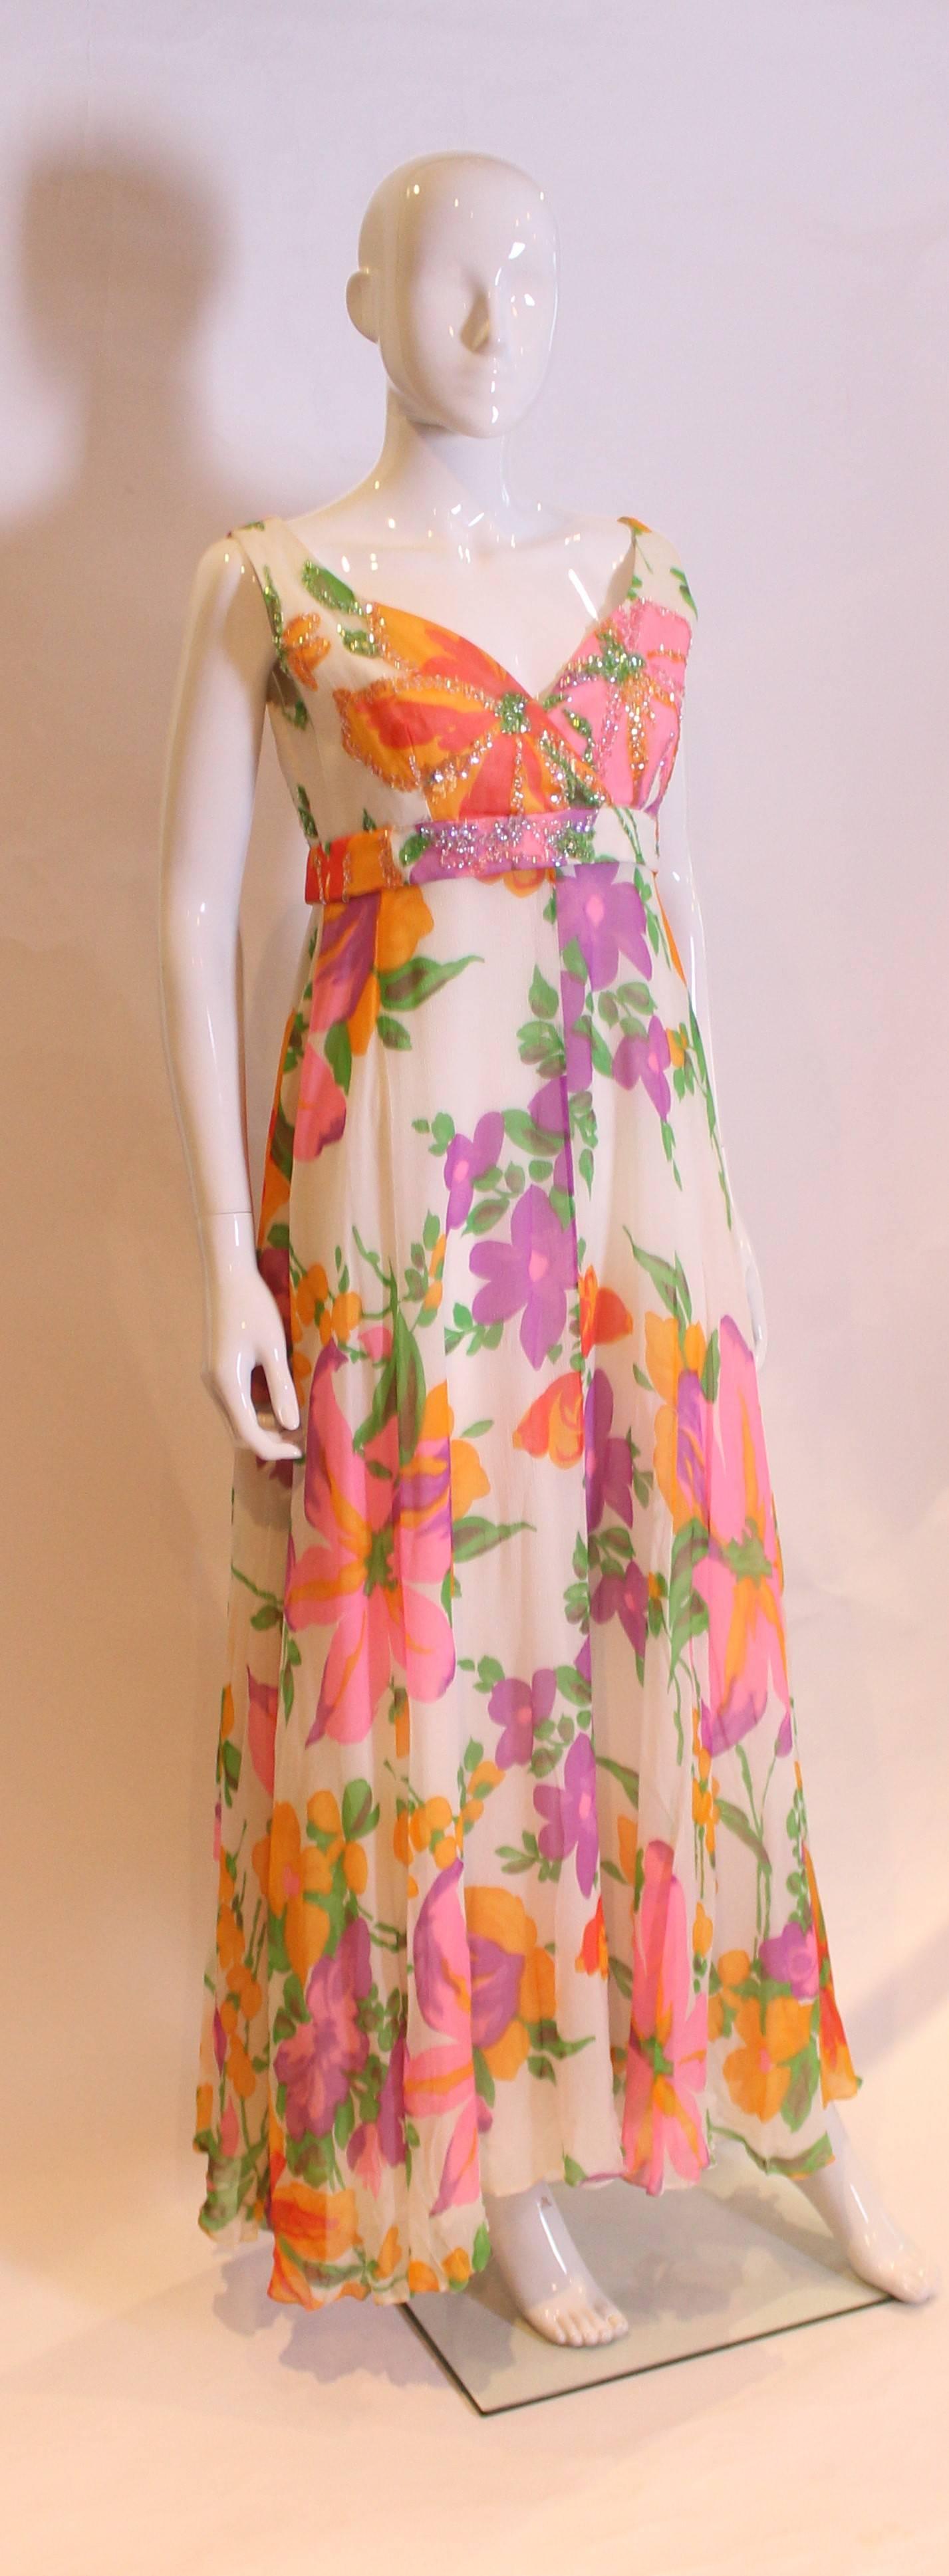 Ein tolles Sommerkleid von der britischen Designerin Susan Small. Das Kleid ist in einer bunten Mischung aus tropischen Farben, Rosa, Lila, Grün und Orange gehalten. Es hat einen überkreuzten V-Ausschnitt, ein Band unter der Brust, einen